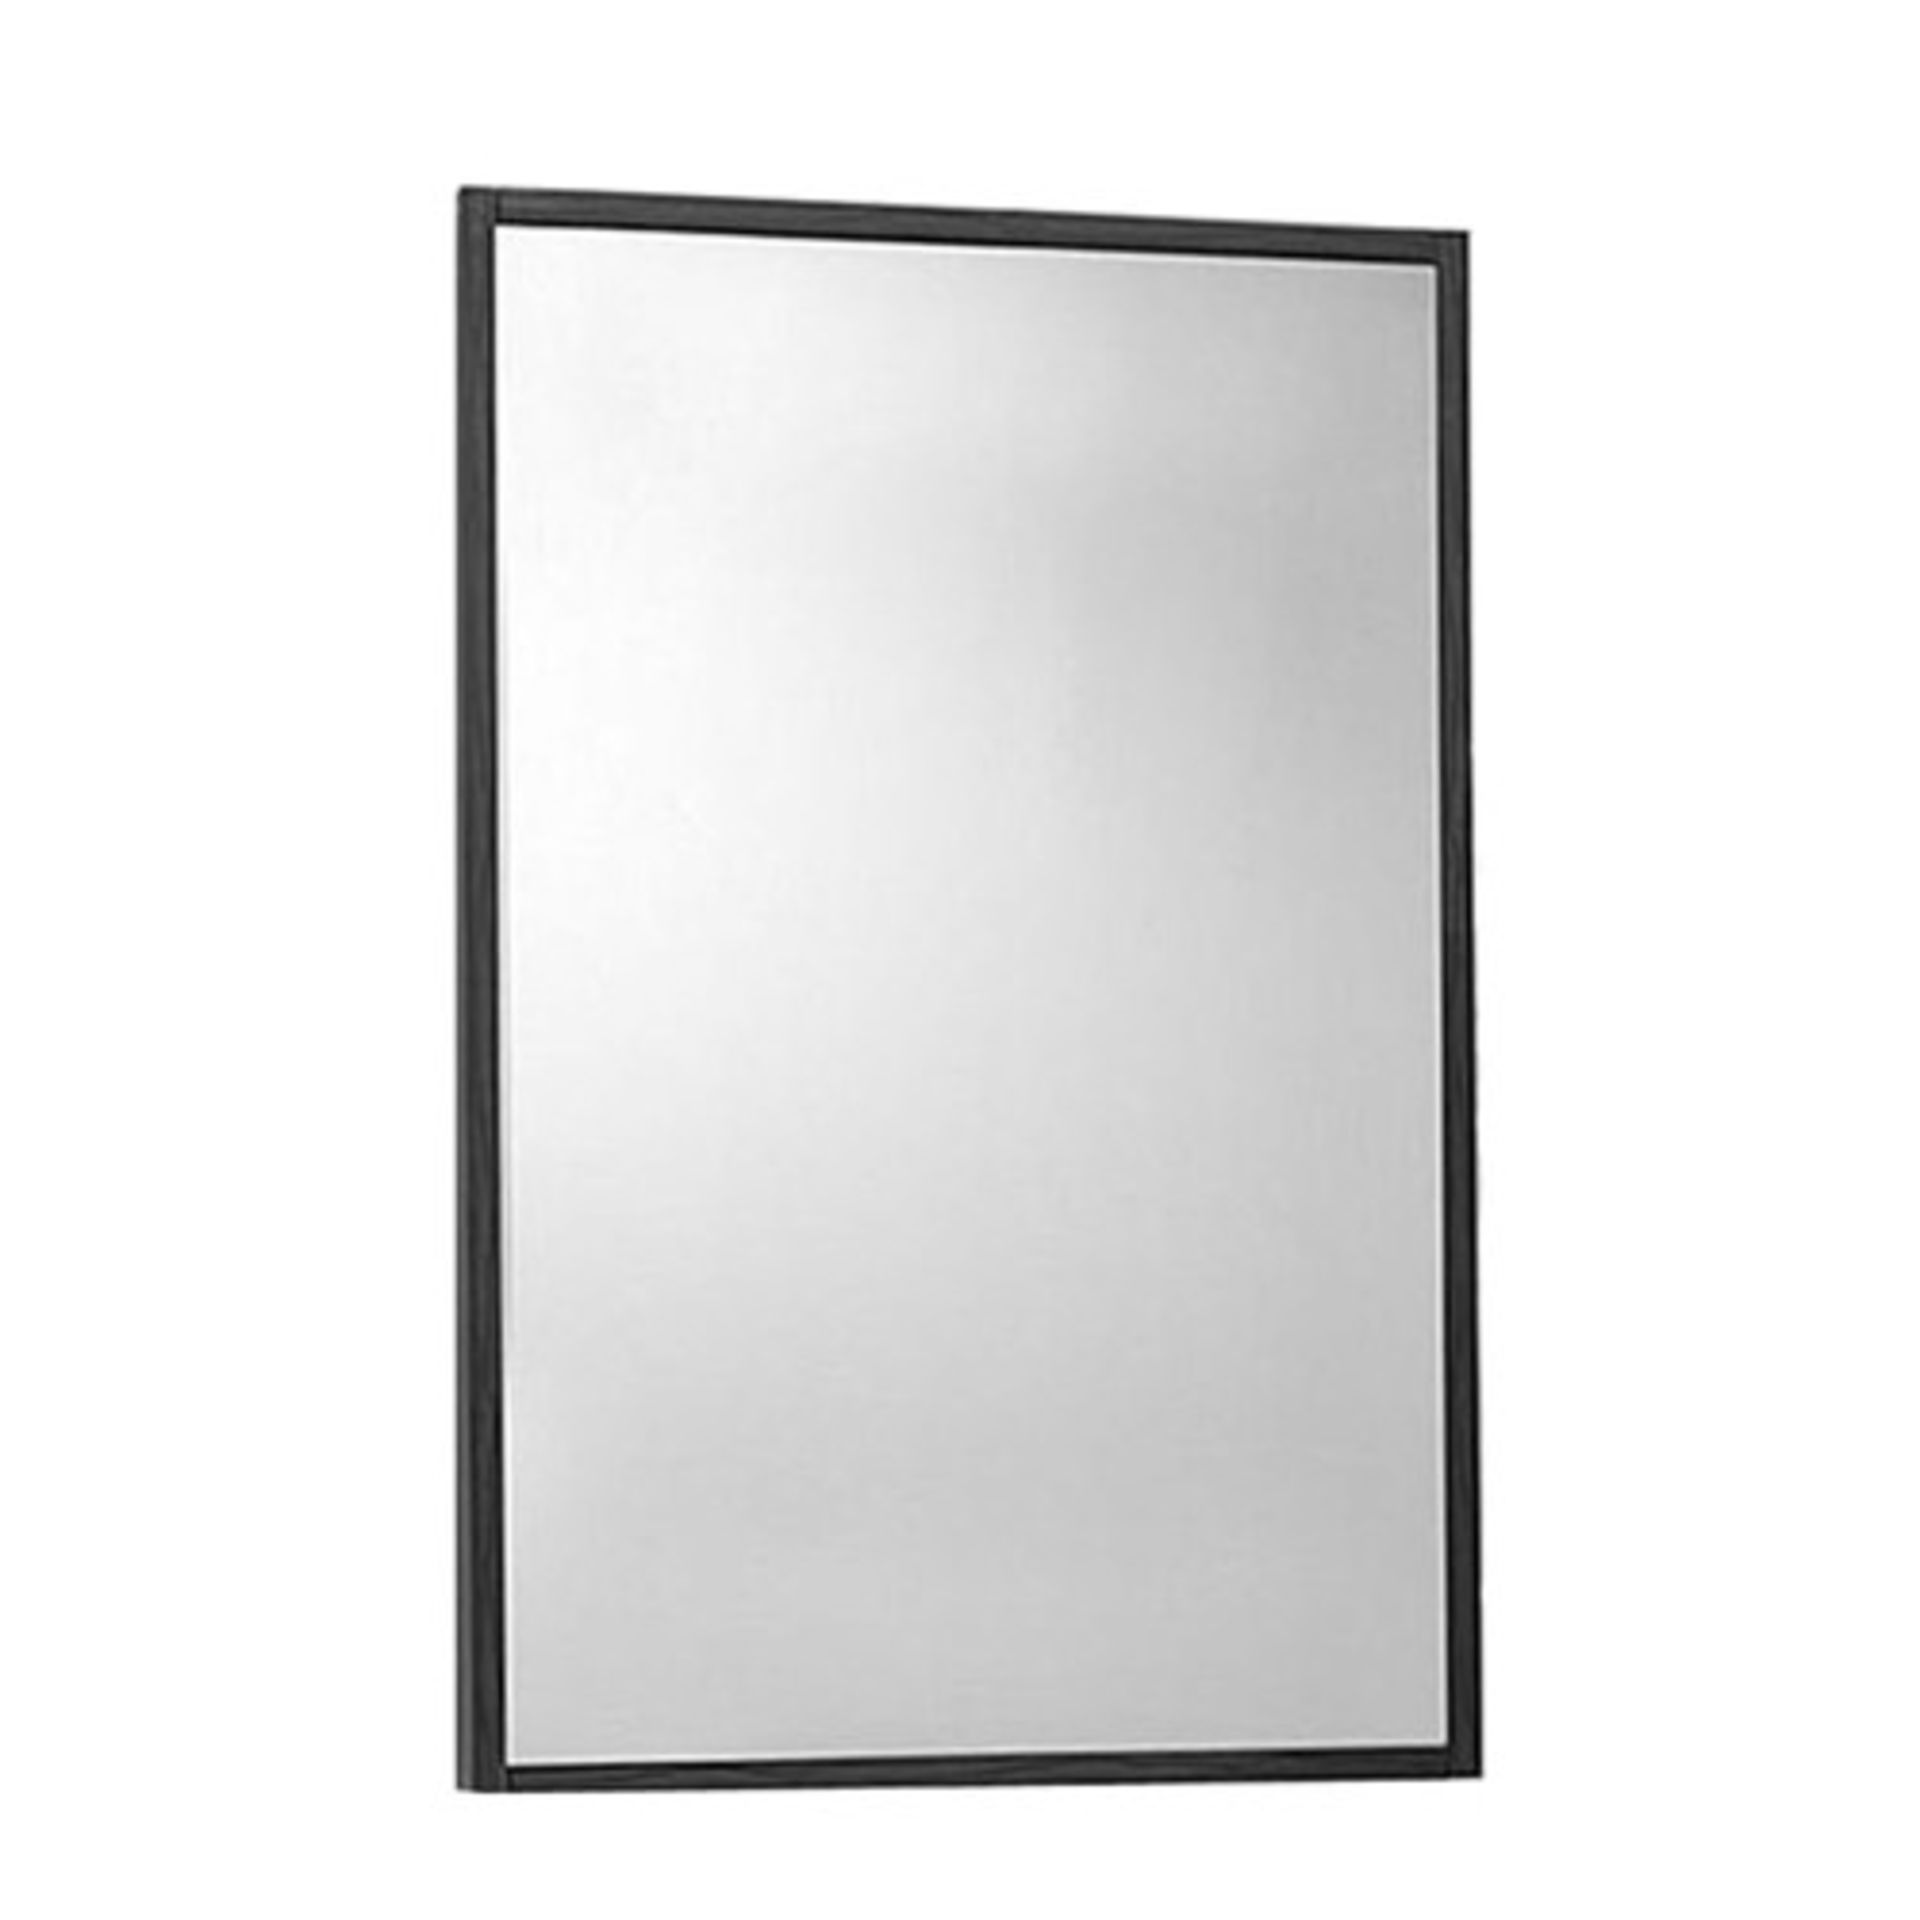 1 x Premier Glide Mirror - Walnut - New & Boxed Stock - Ref: LQ003 - Location: Cheadle SK8